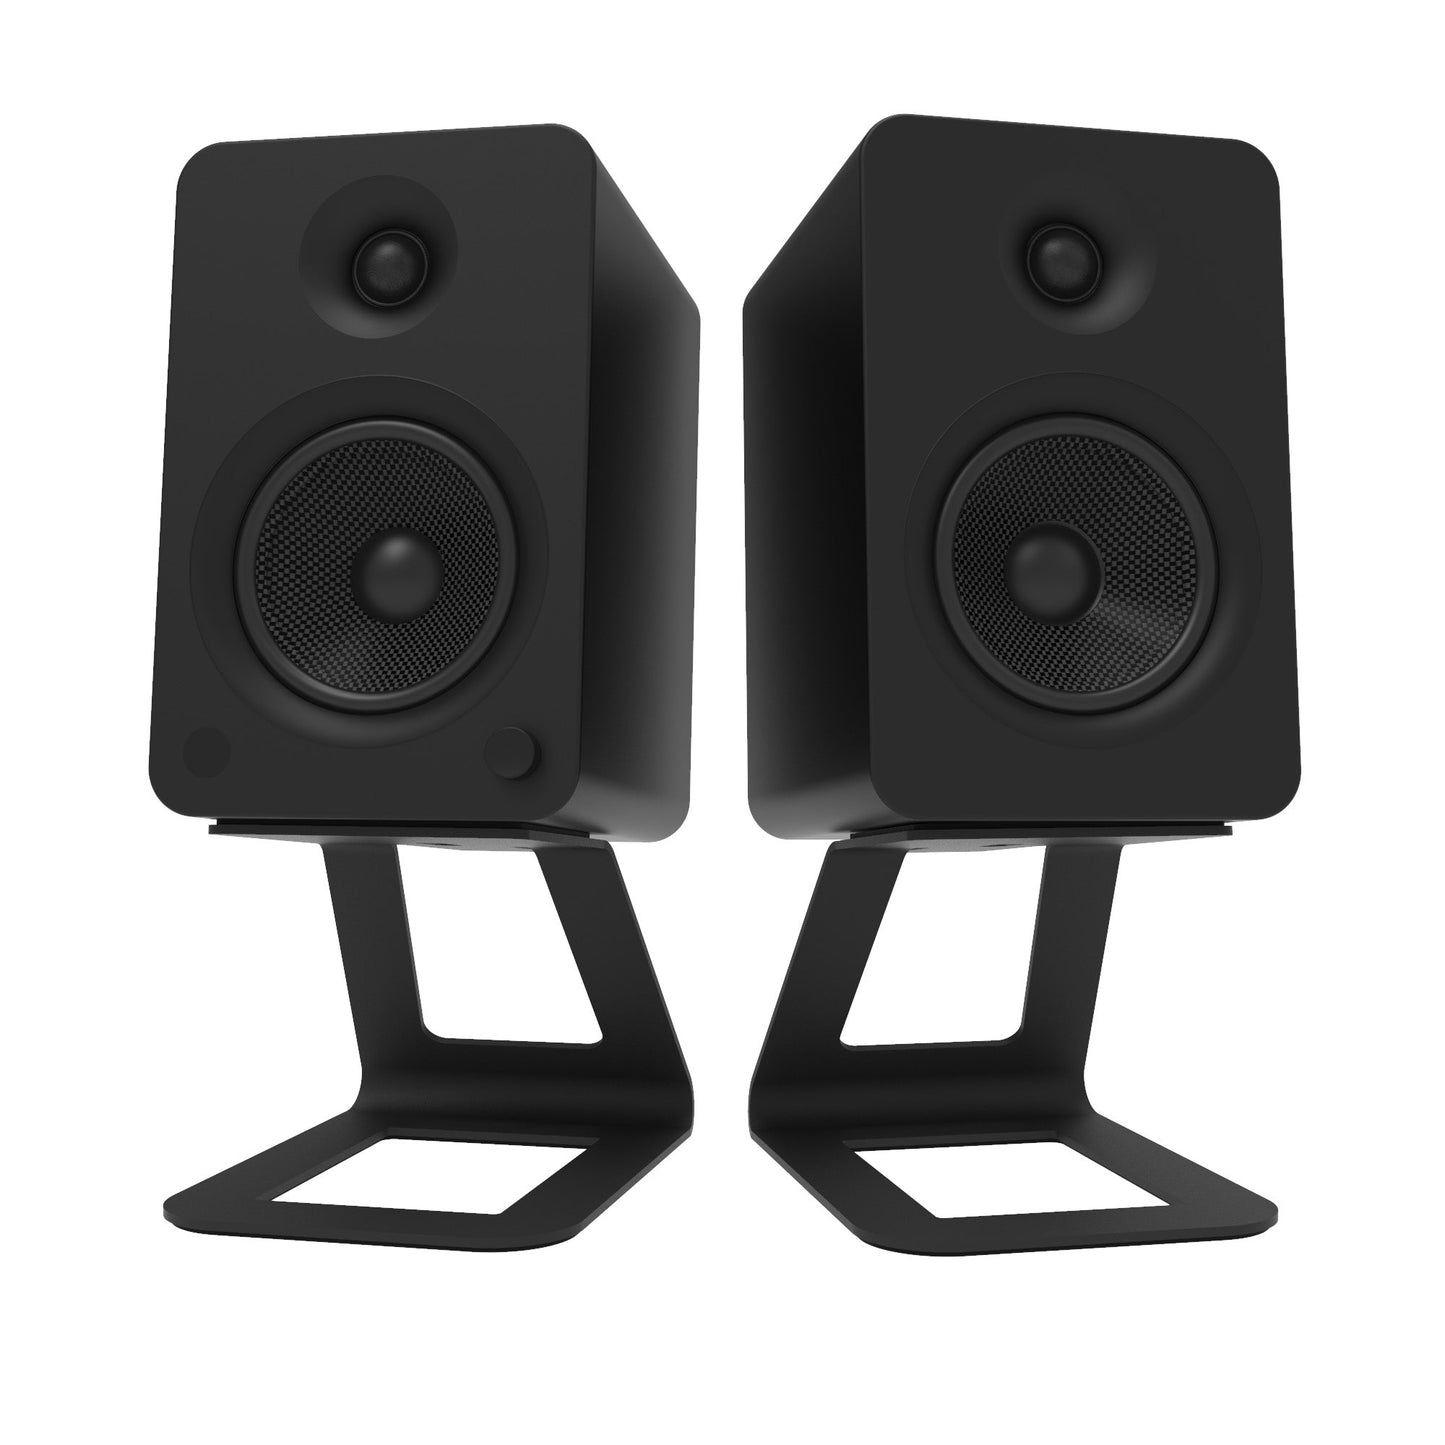 Kanto SE6 Elevated Desktop Speaker Stands for Large Speakers - Pair, Black